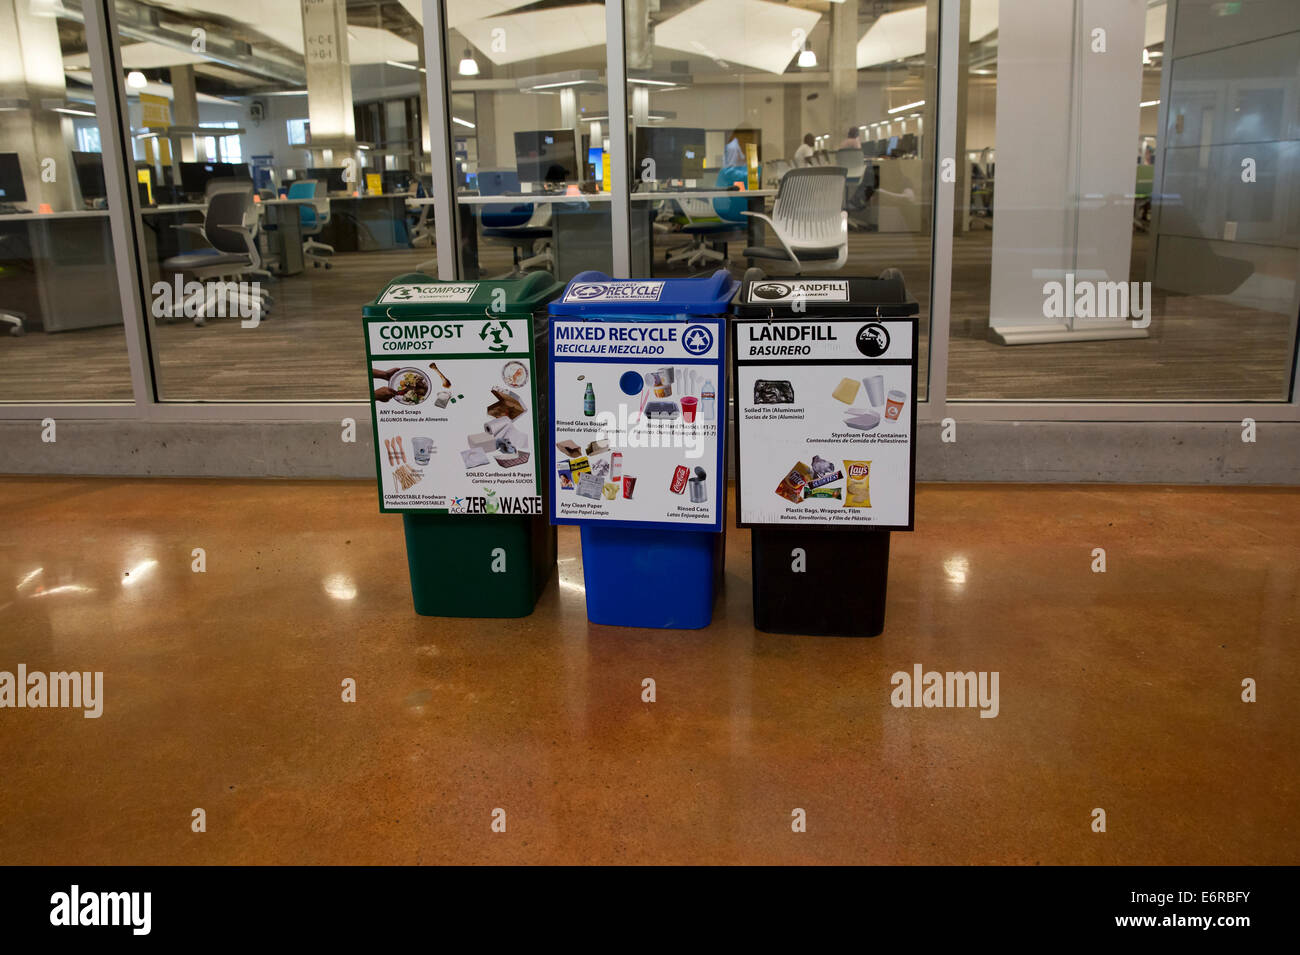 Bilingue Anglais et Espagnol signe sur les bacs de recyclage à l'intérieur Austin Community College Building Banque D'Images